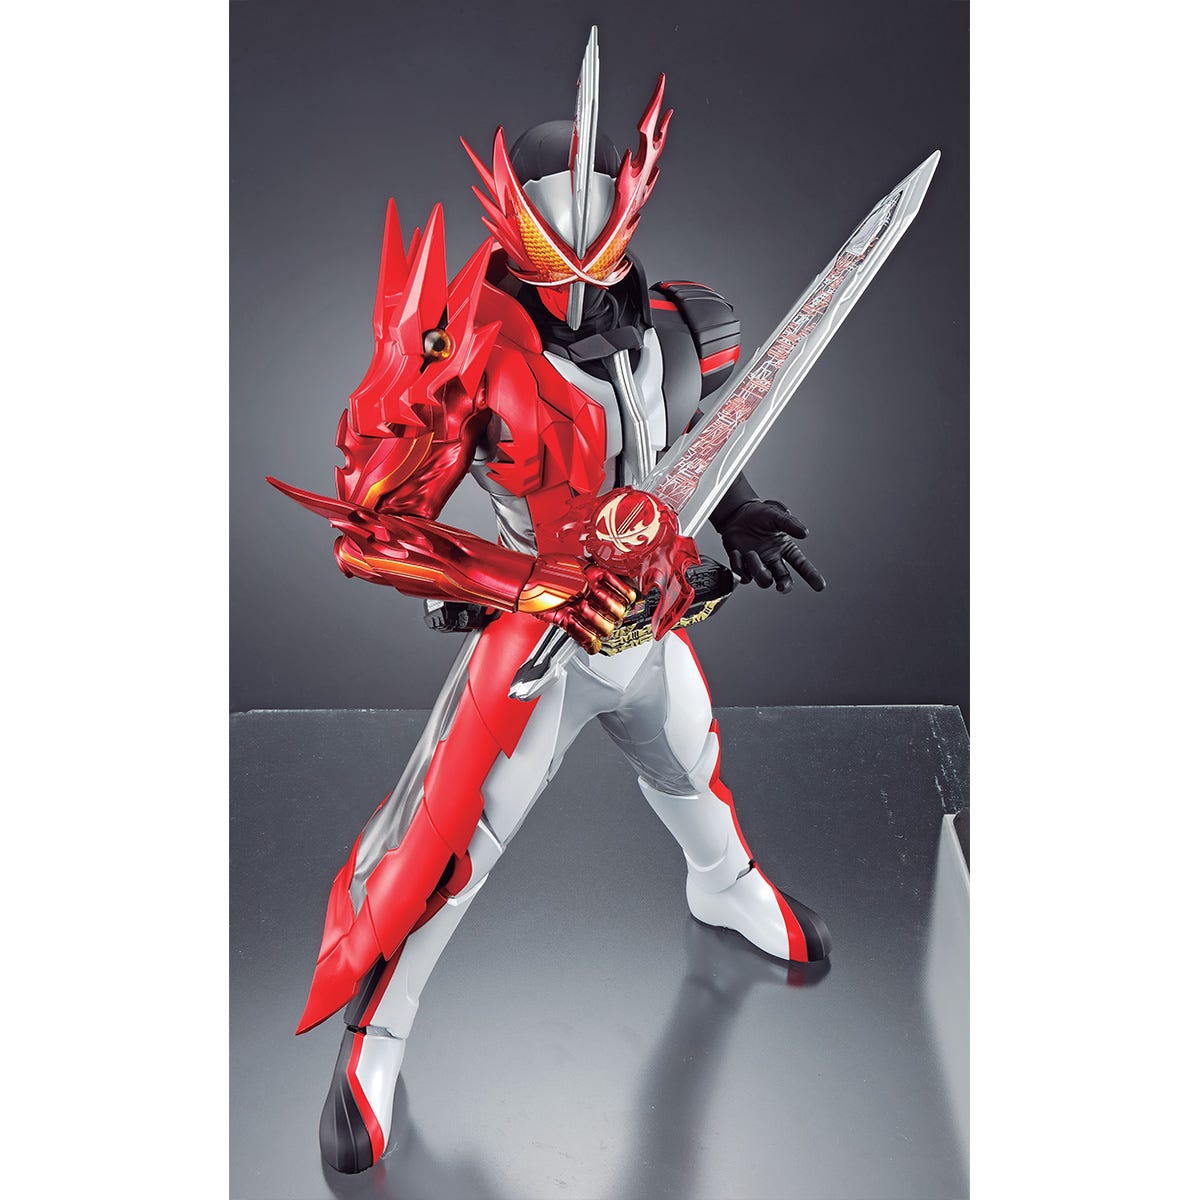 Kamen Rider Saber Ichiban Figure